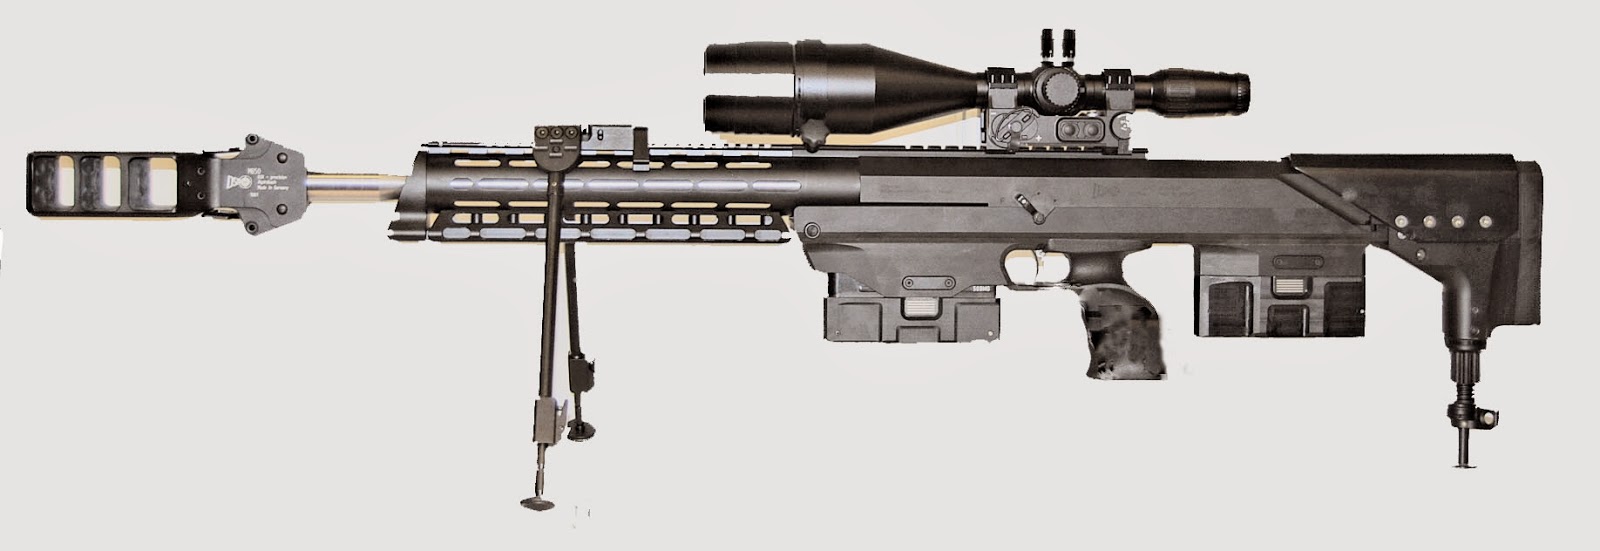 DSR 50 Precision Sniper